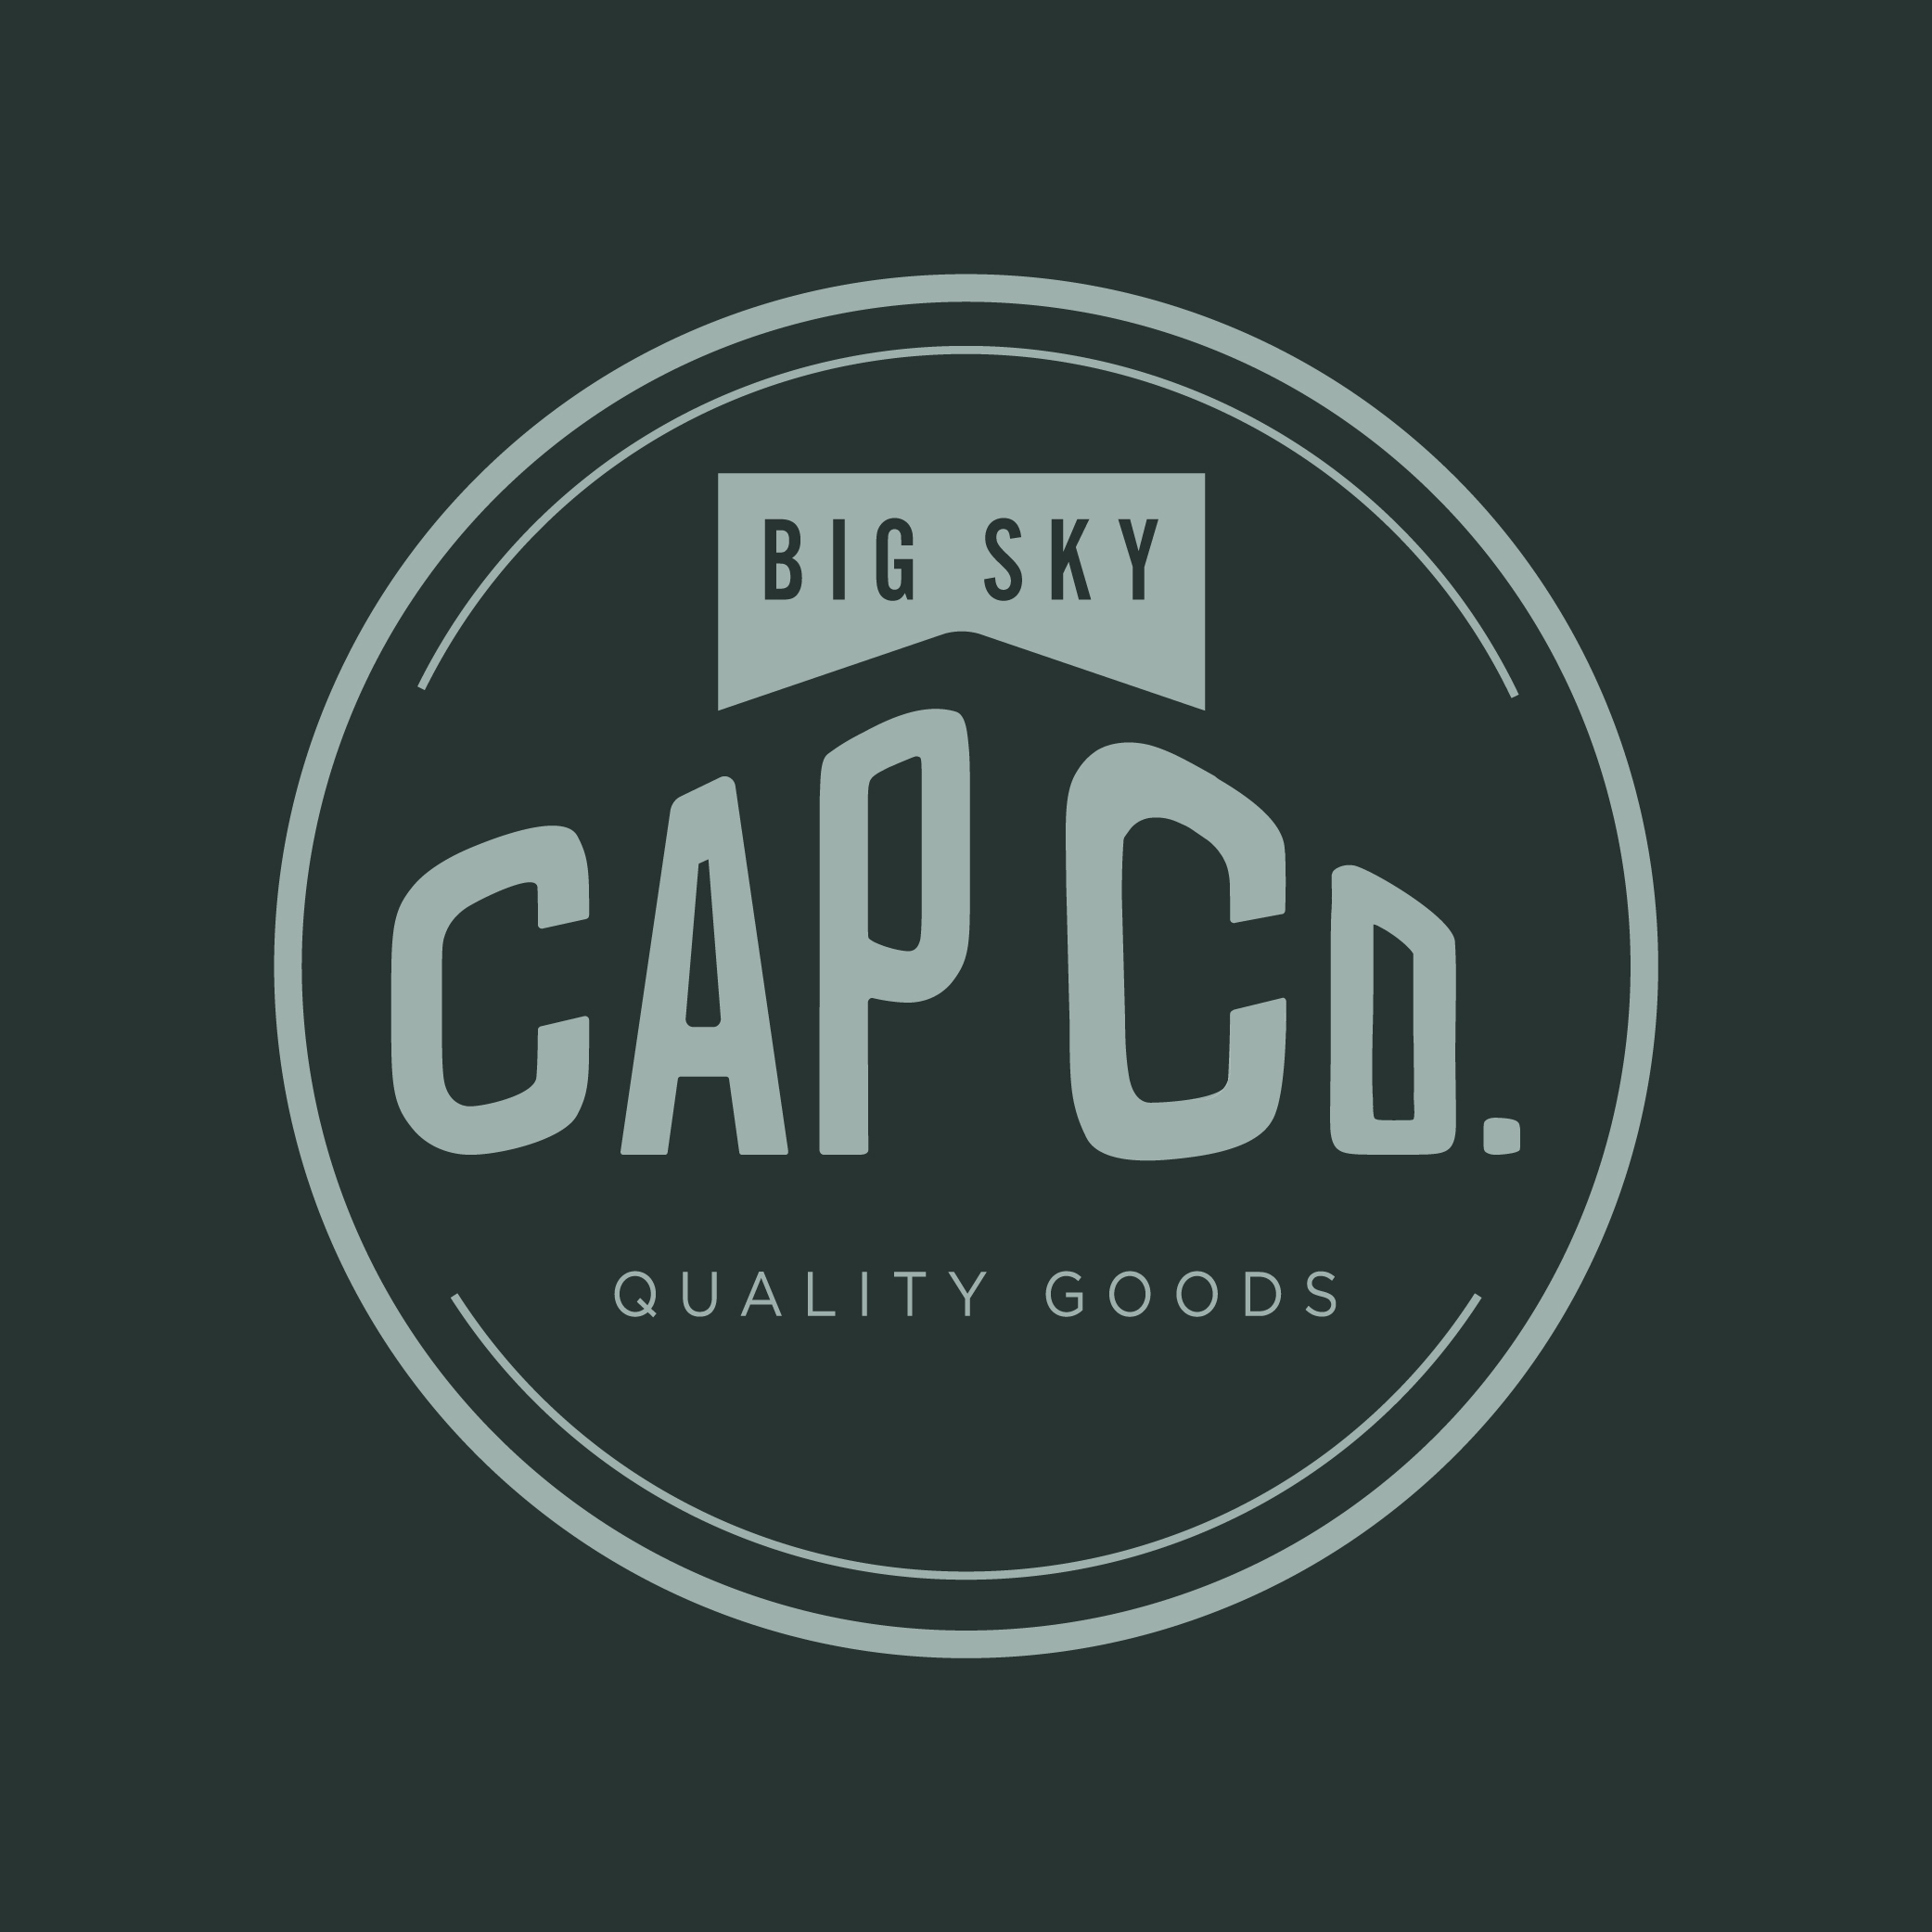 Big Sky Cap Co logo